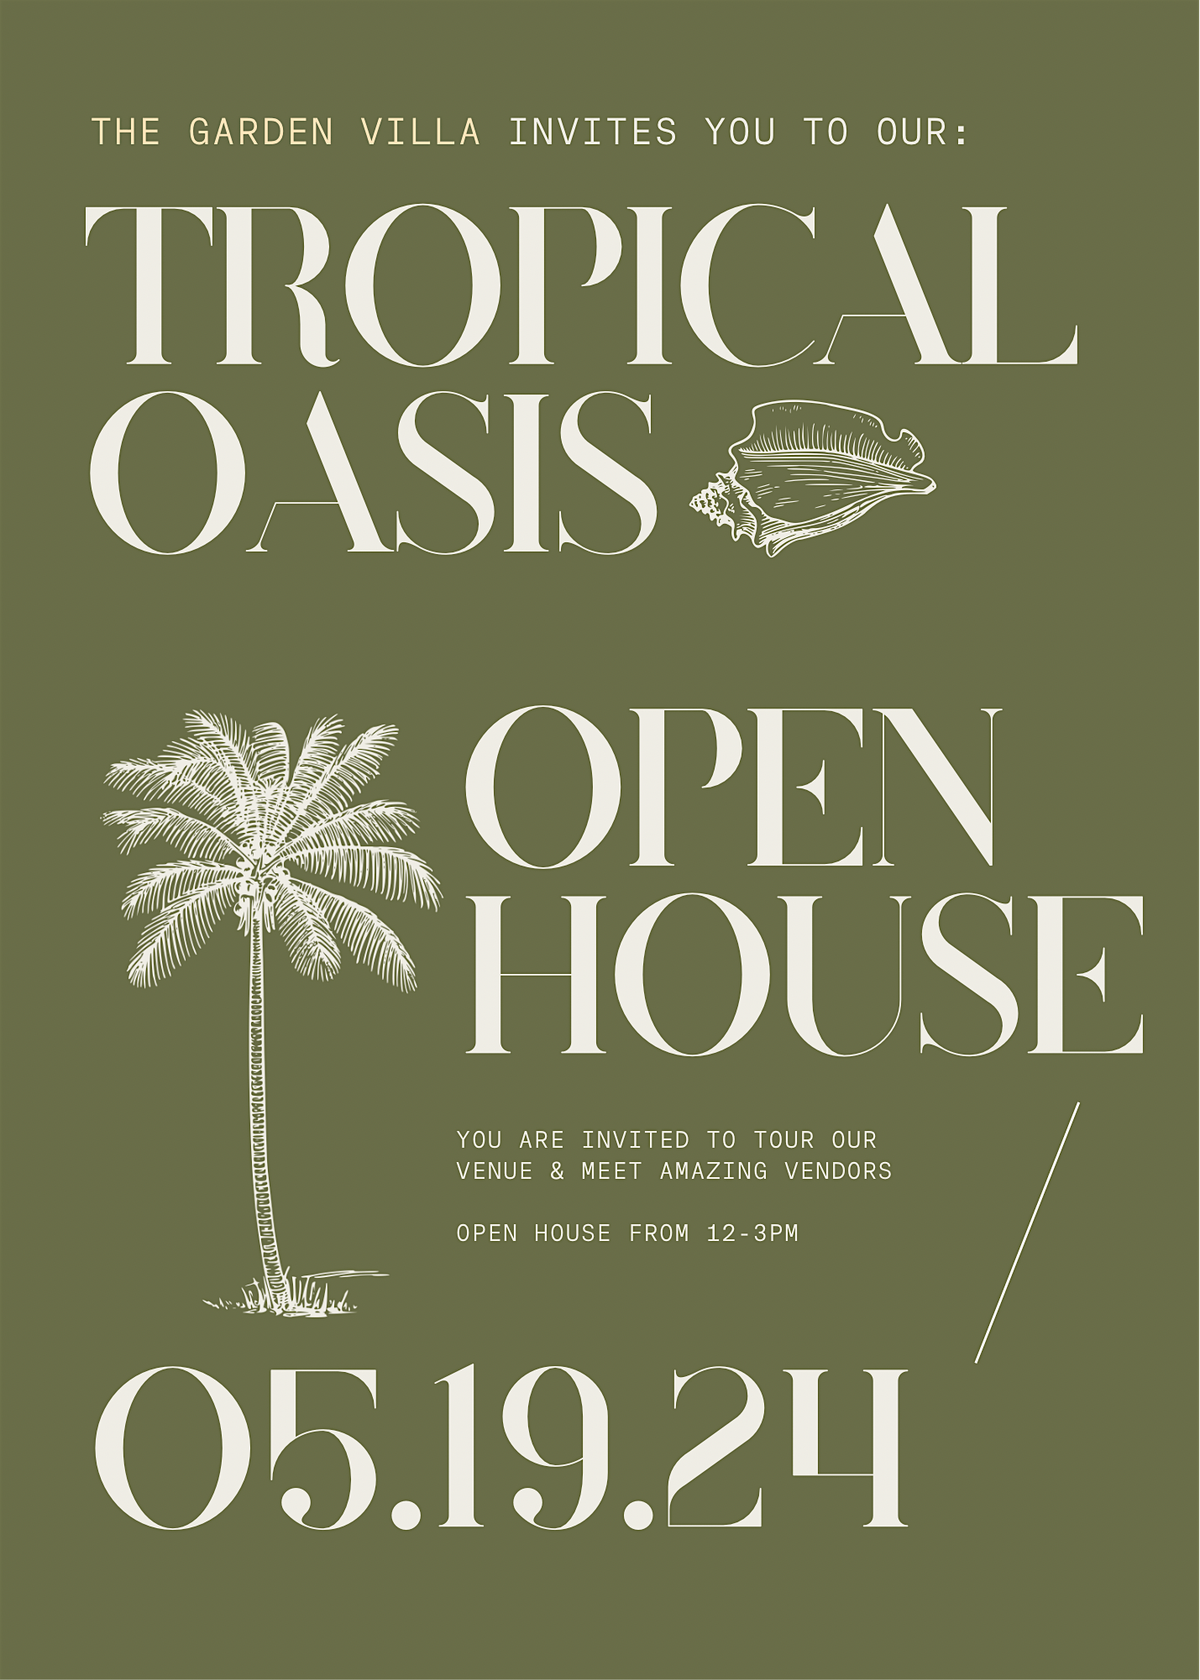 Tropical Oasis at The Garden Villa | Open House